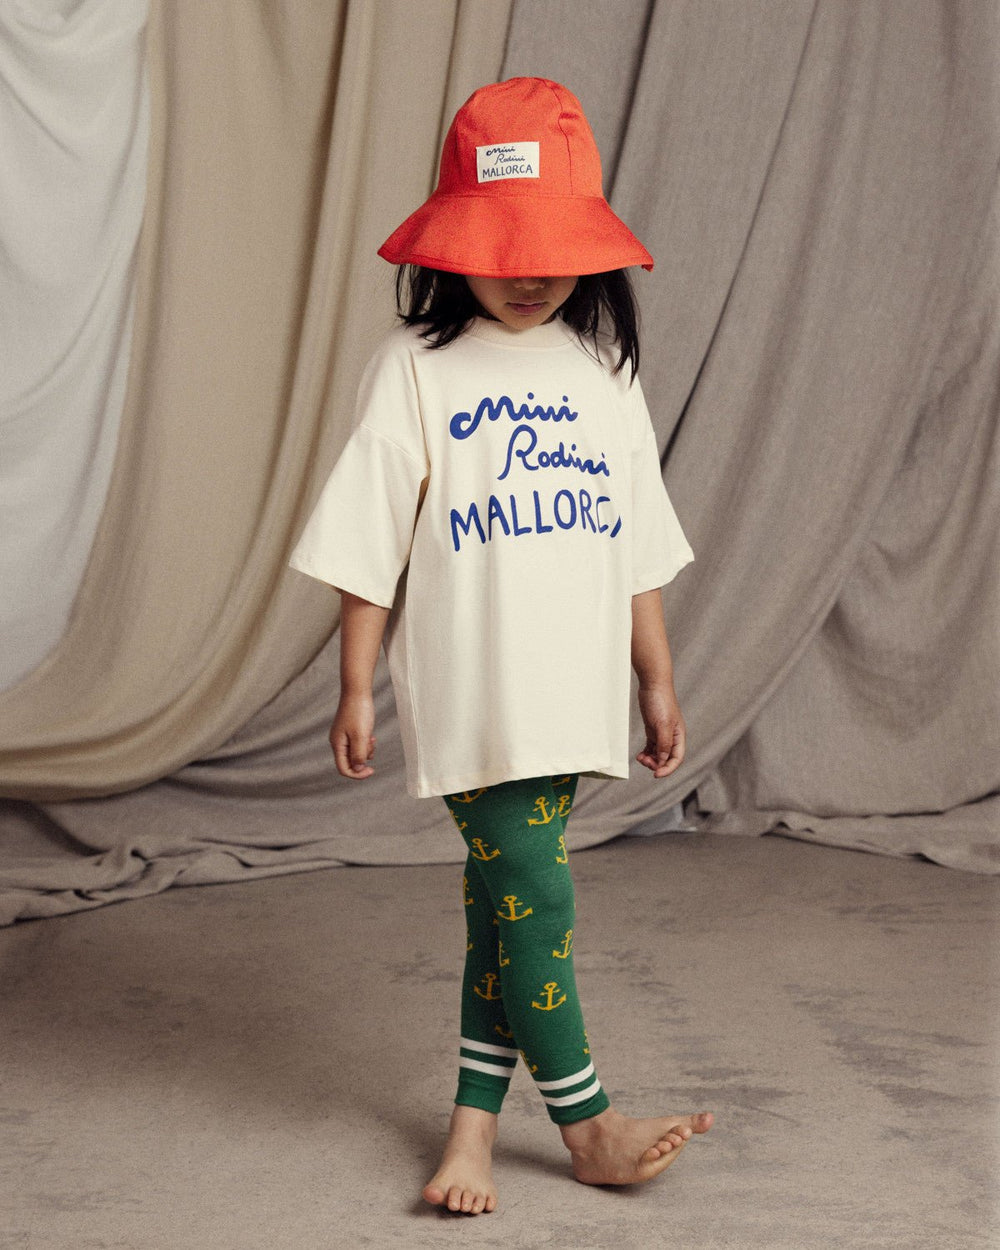 Mallorca T-Shirt in Offwhite by Mini Rodini - Petite Belle